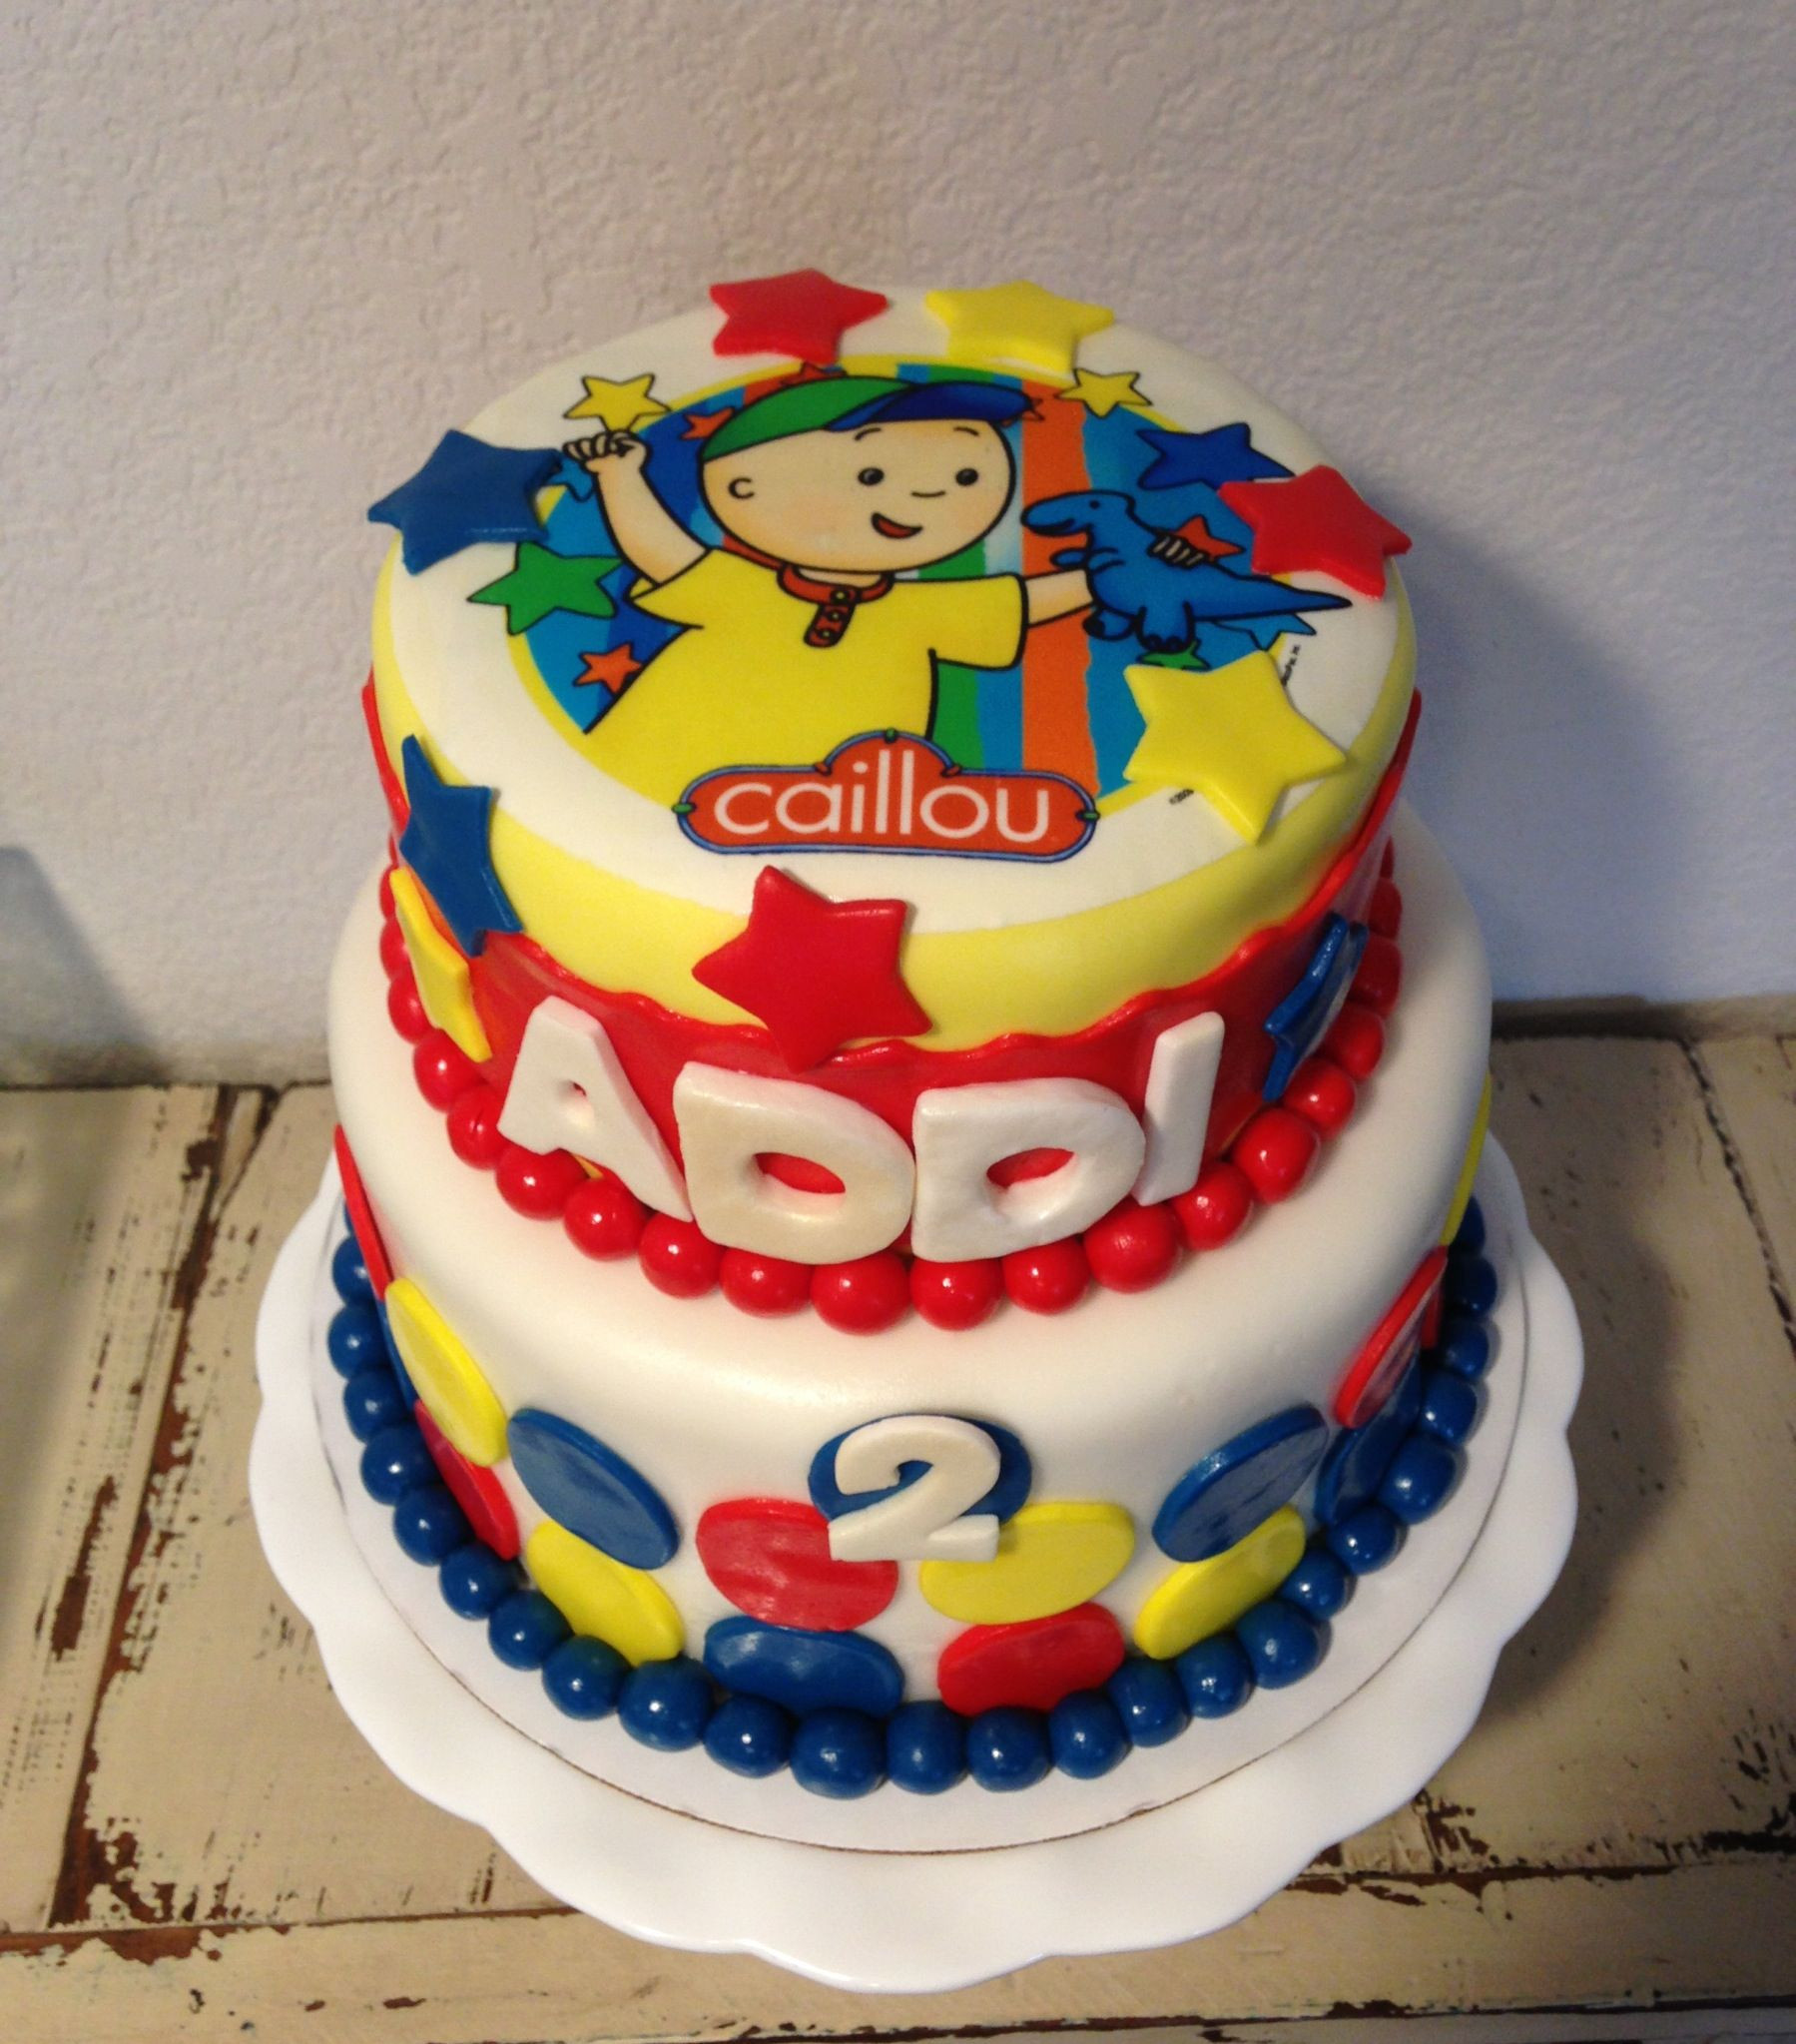 Caillou Birthday Cakes
 Caillou Birthday Cake KJ Takes The Cake